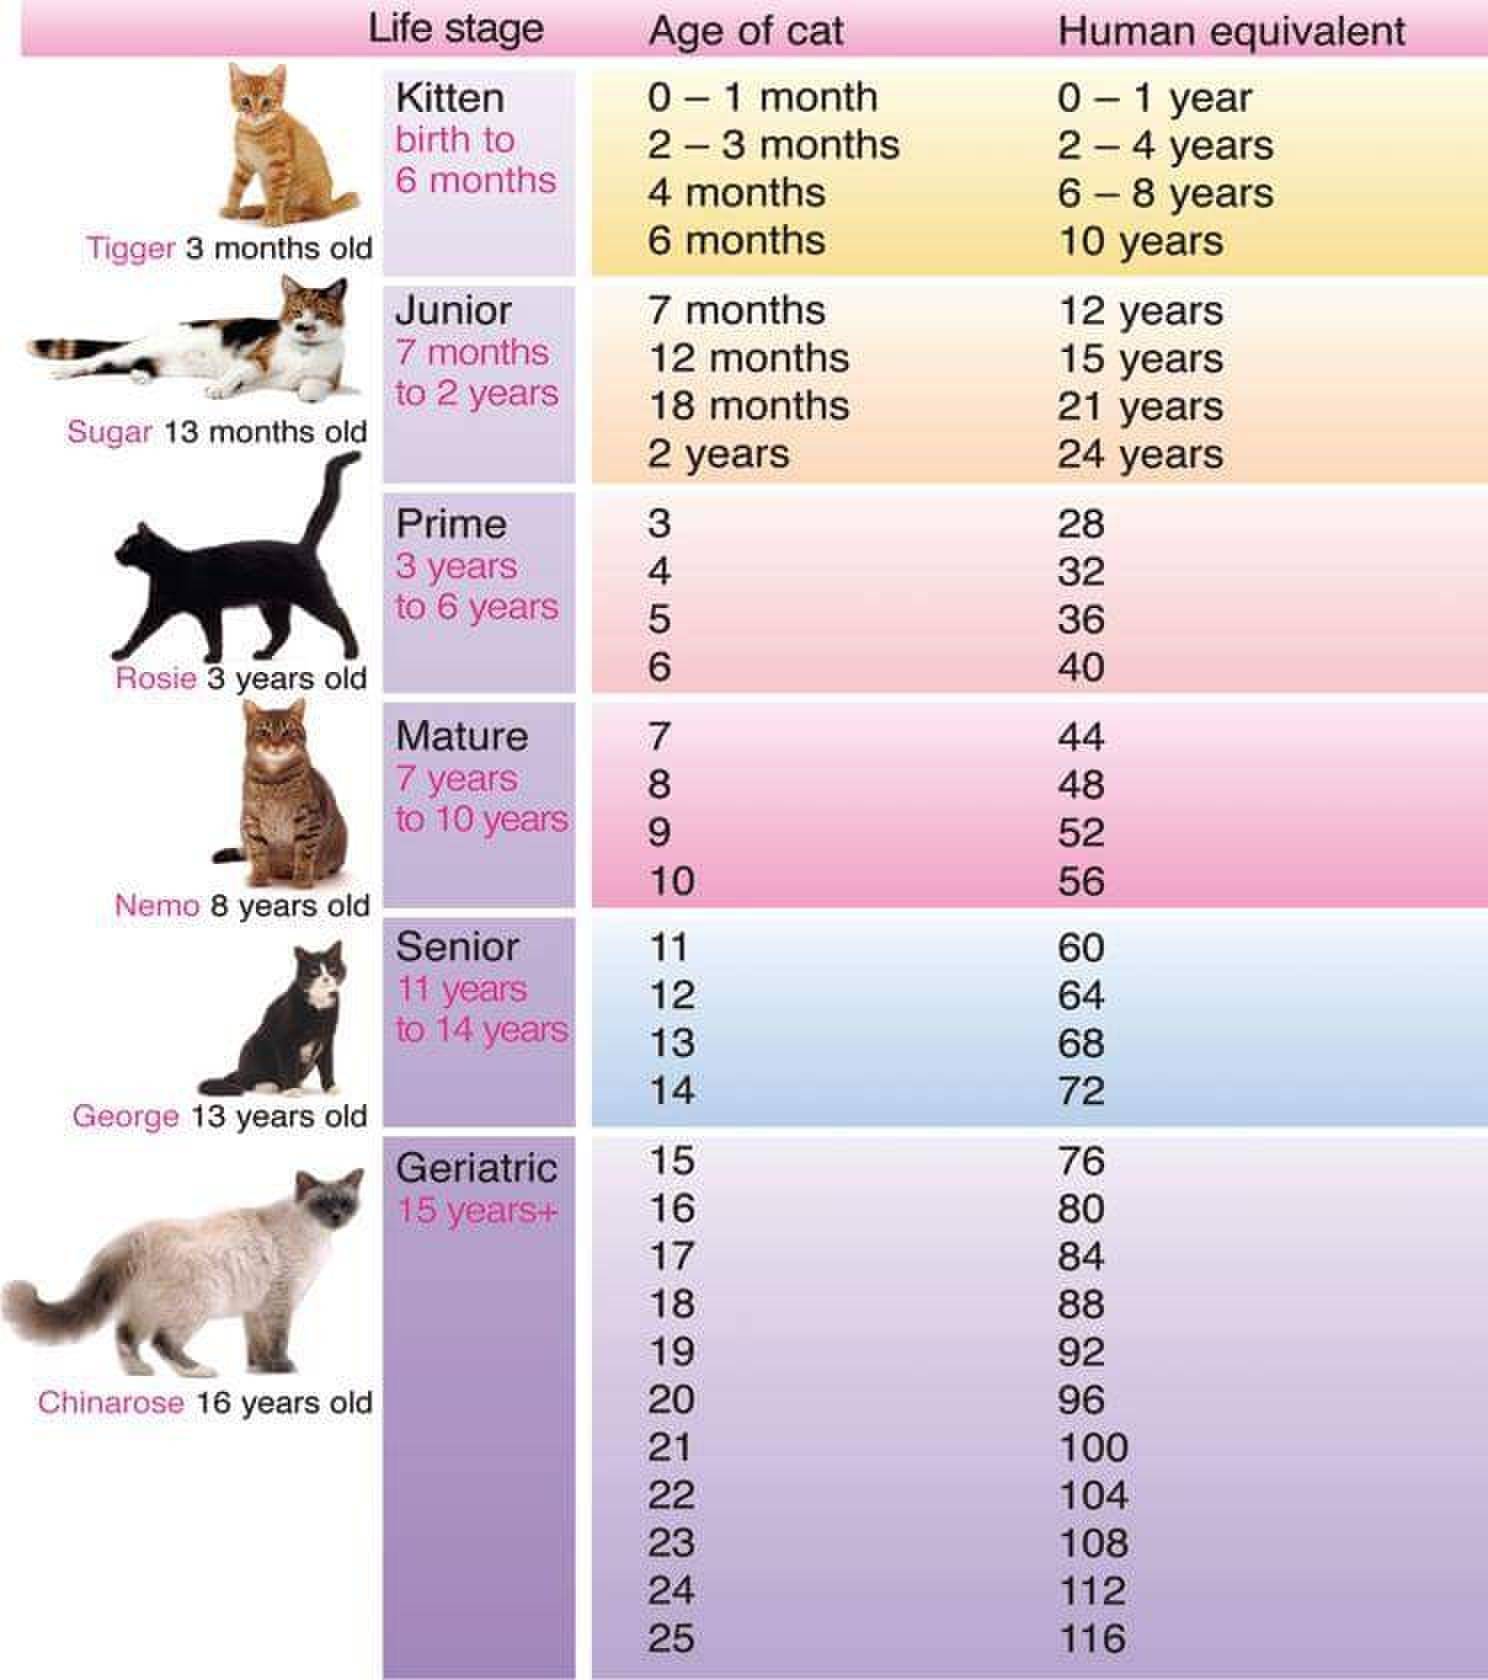 Сколько котят может родить кошка: нормальные показатели и отклонения, насколько большое потомство у животного обычно первый раз